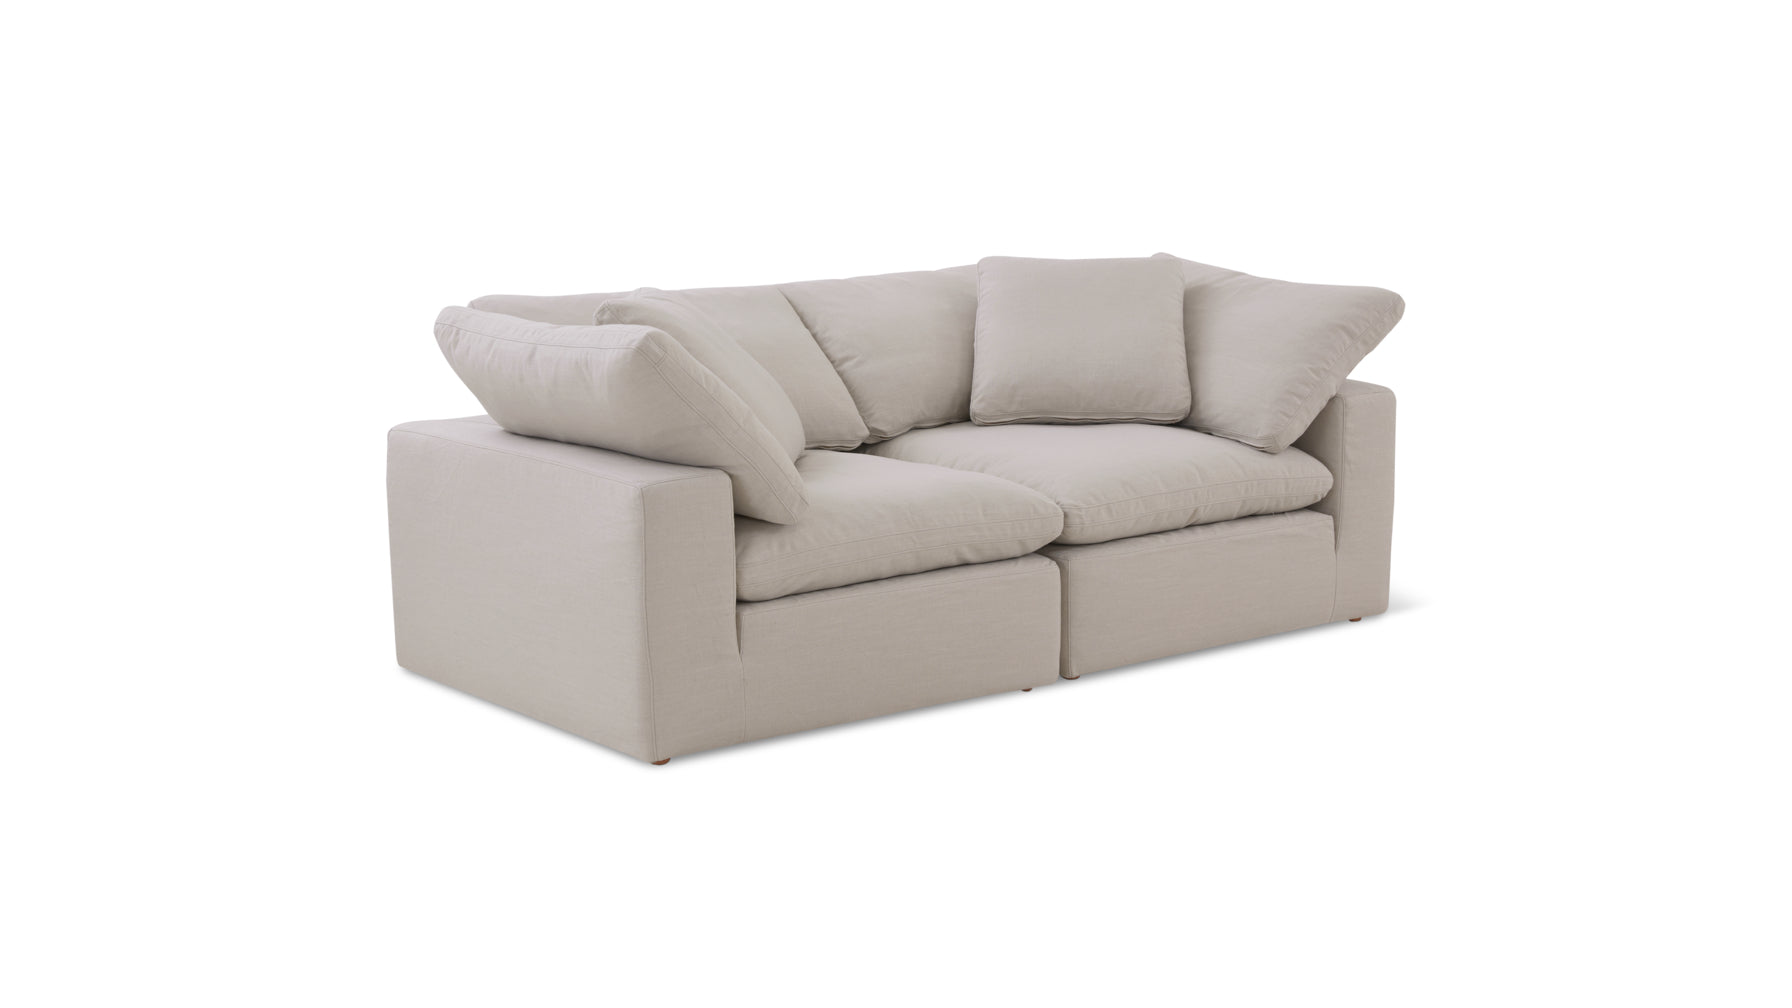 Movie Night™ 2-Piece Modular Sofa, Large, Clay - Image 6